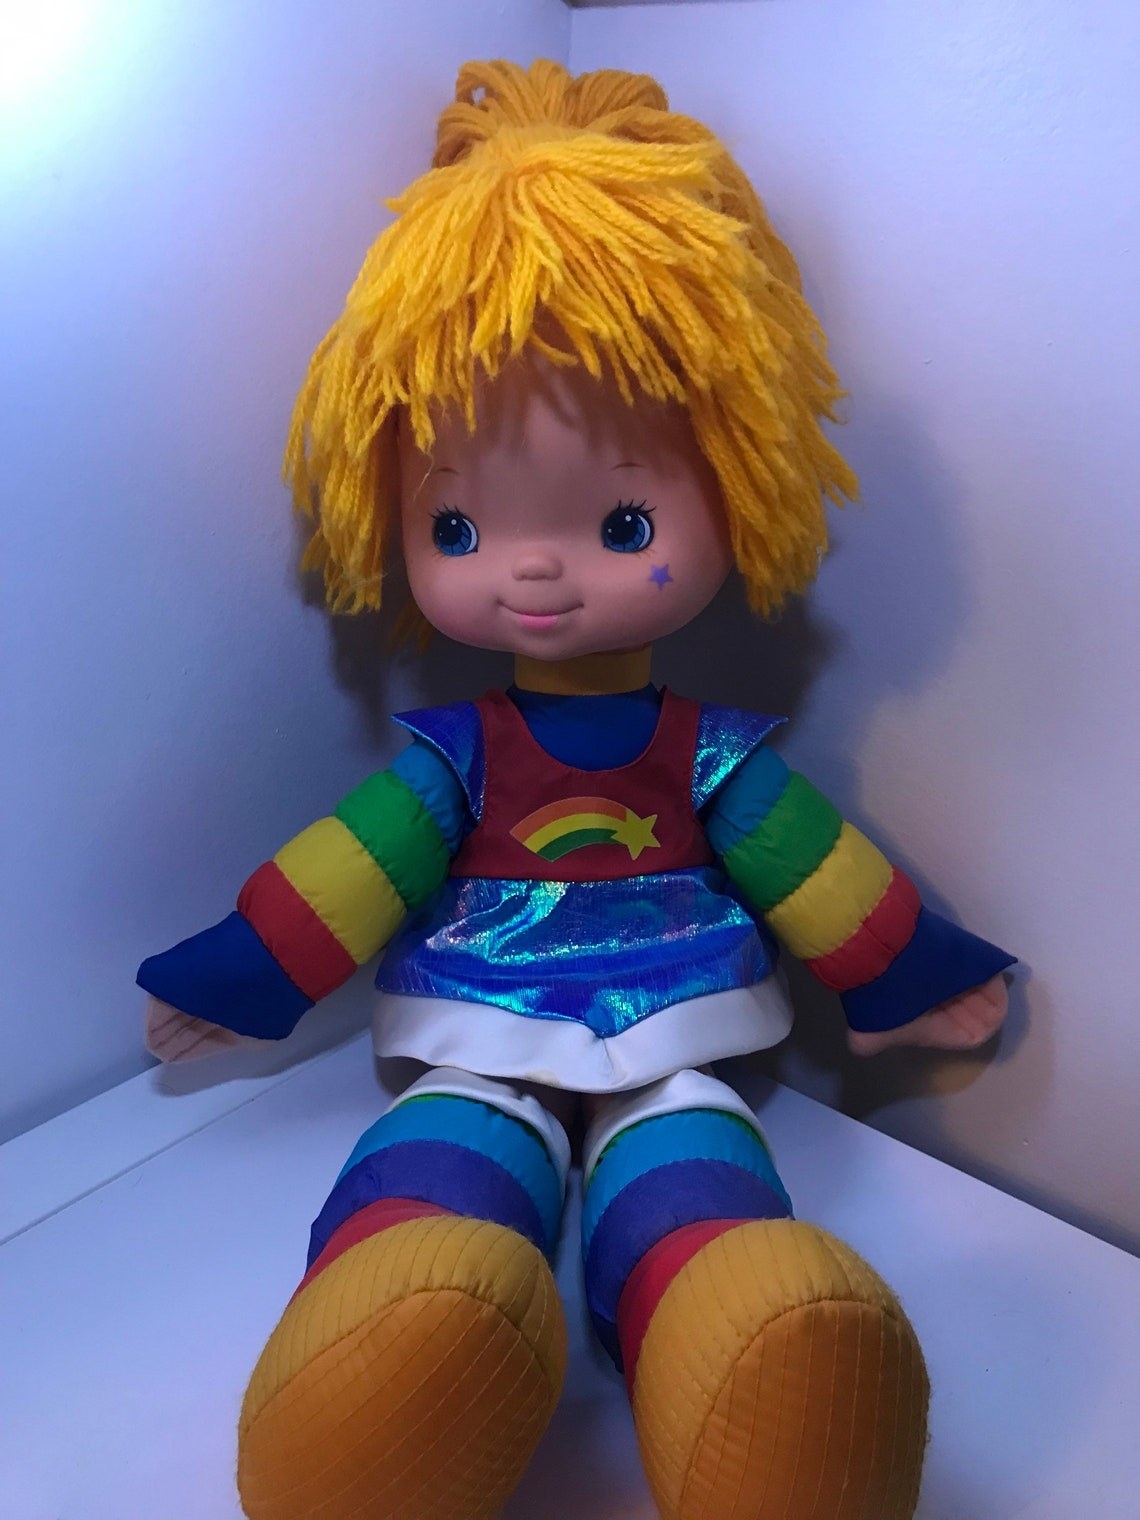 rainbow brite doll sitting down